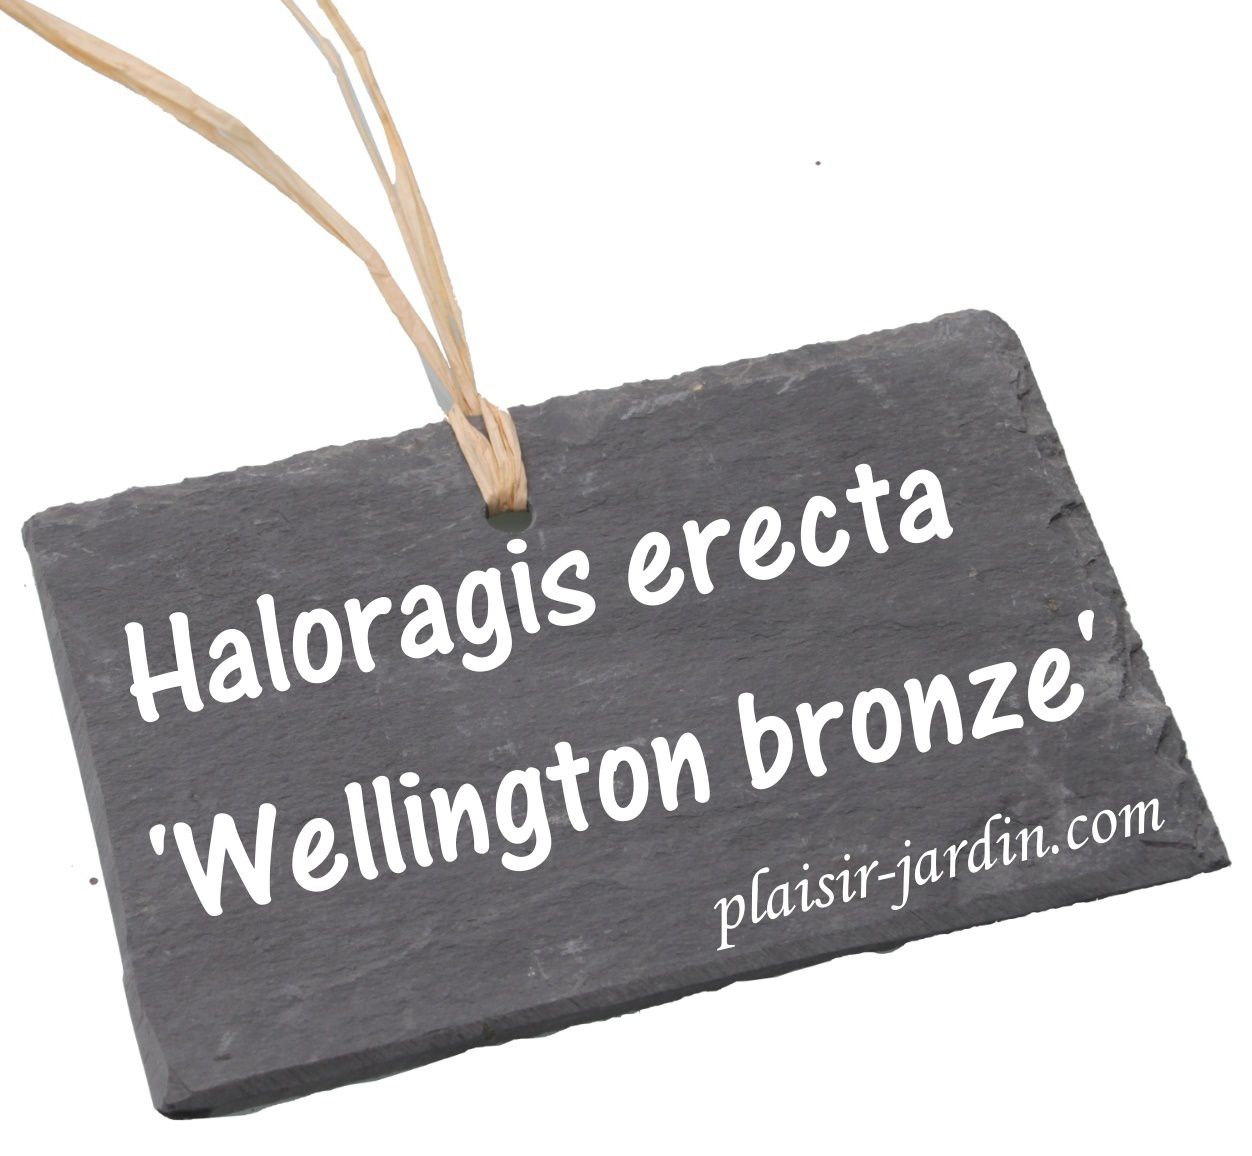 L'Haloragis erecta 'wellington bronze'